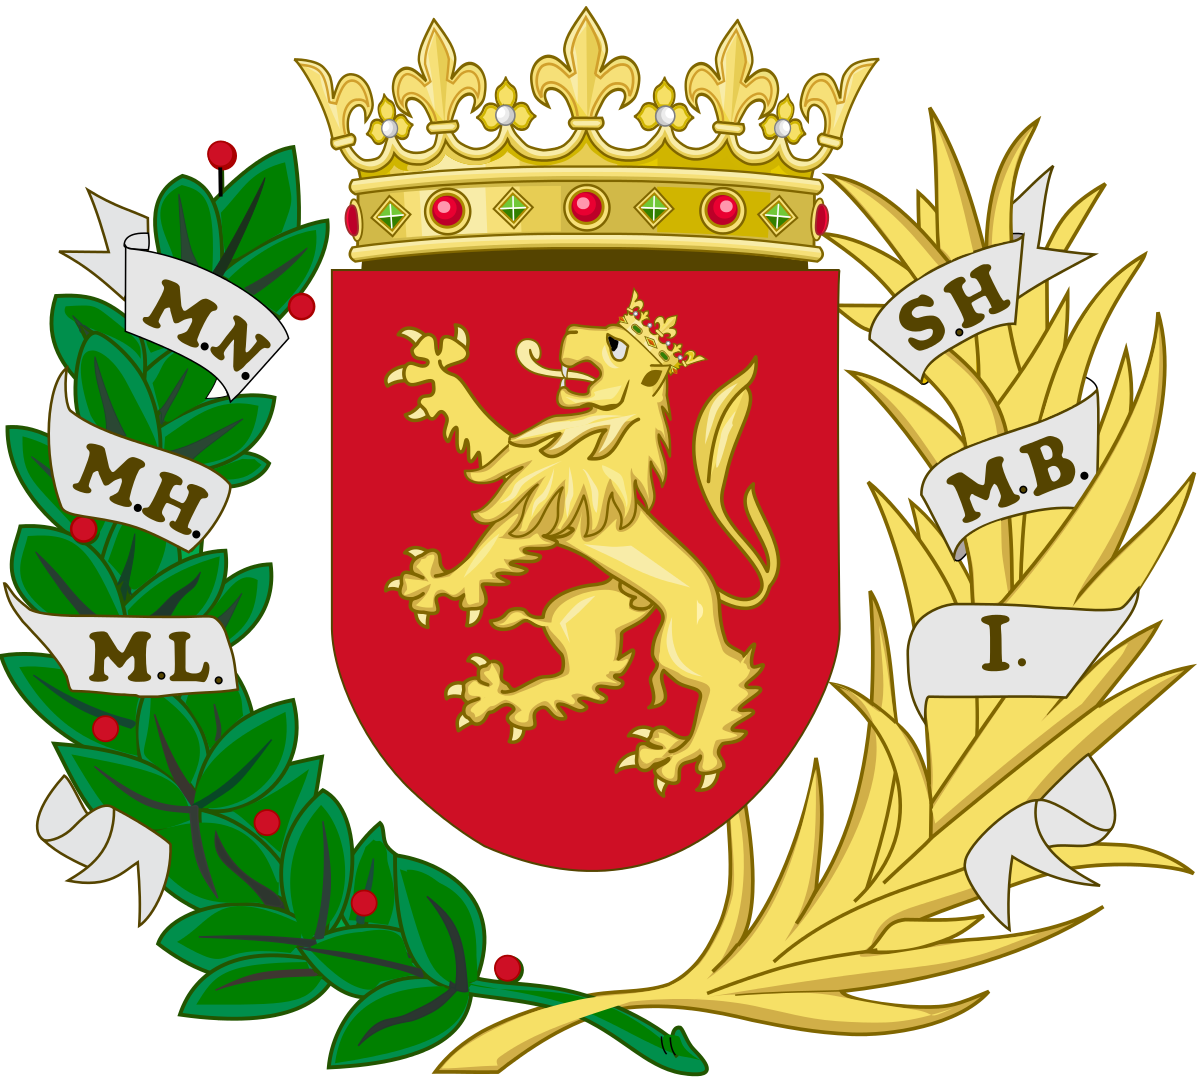 Por qué el Real Zaragoza luce un león rampante en su escudo?